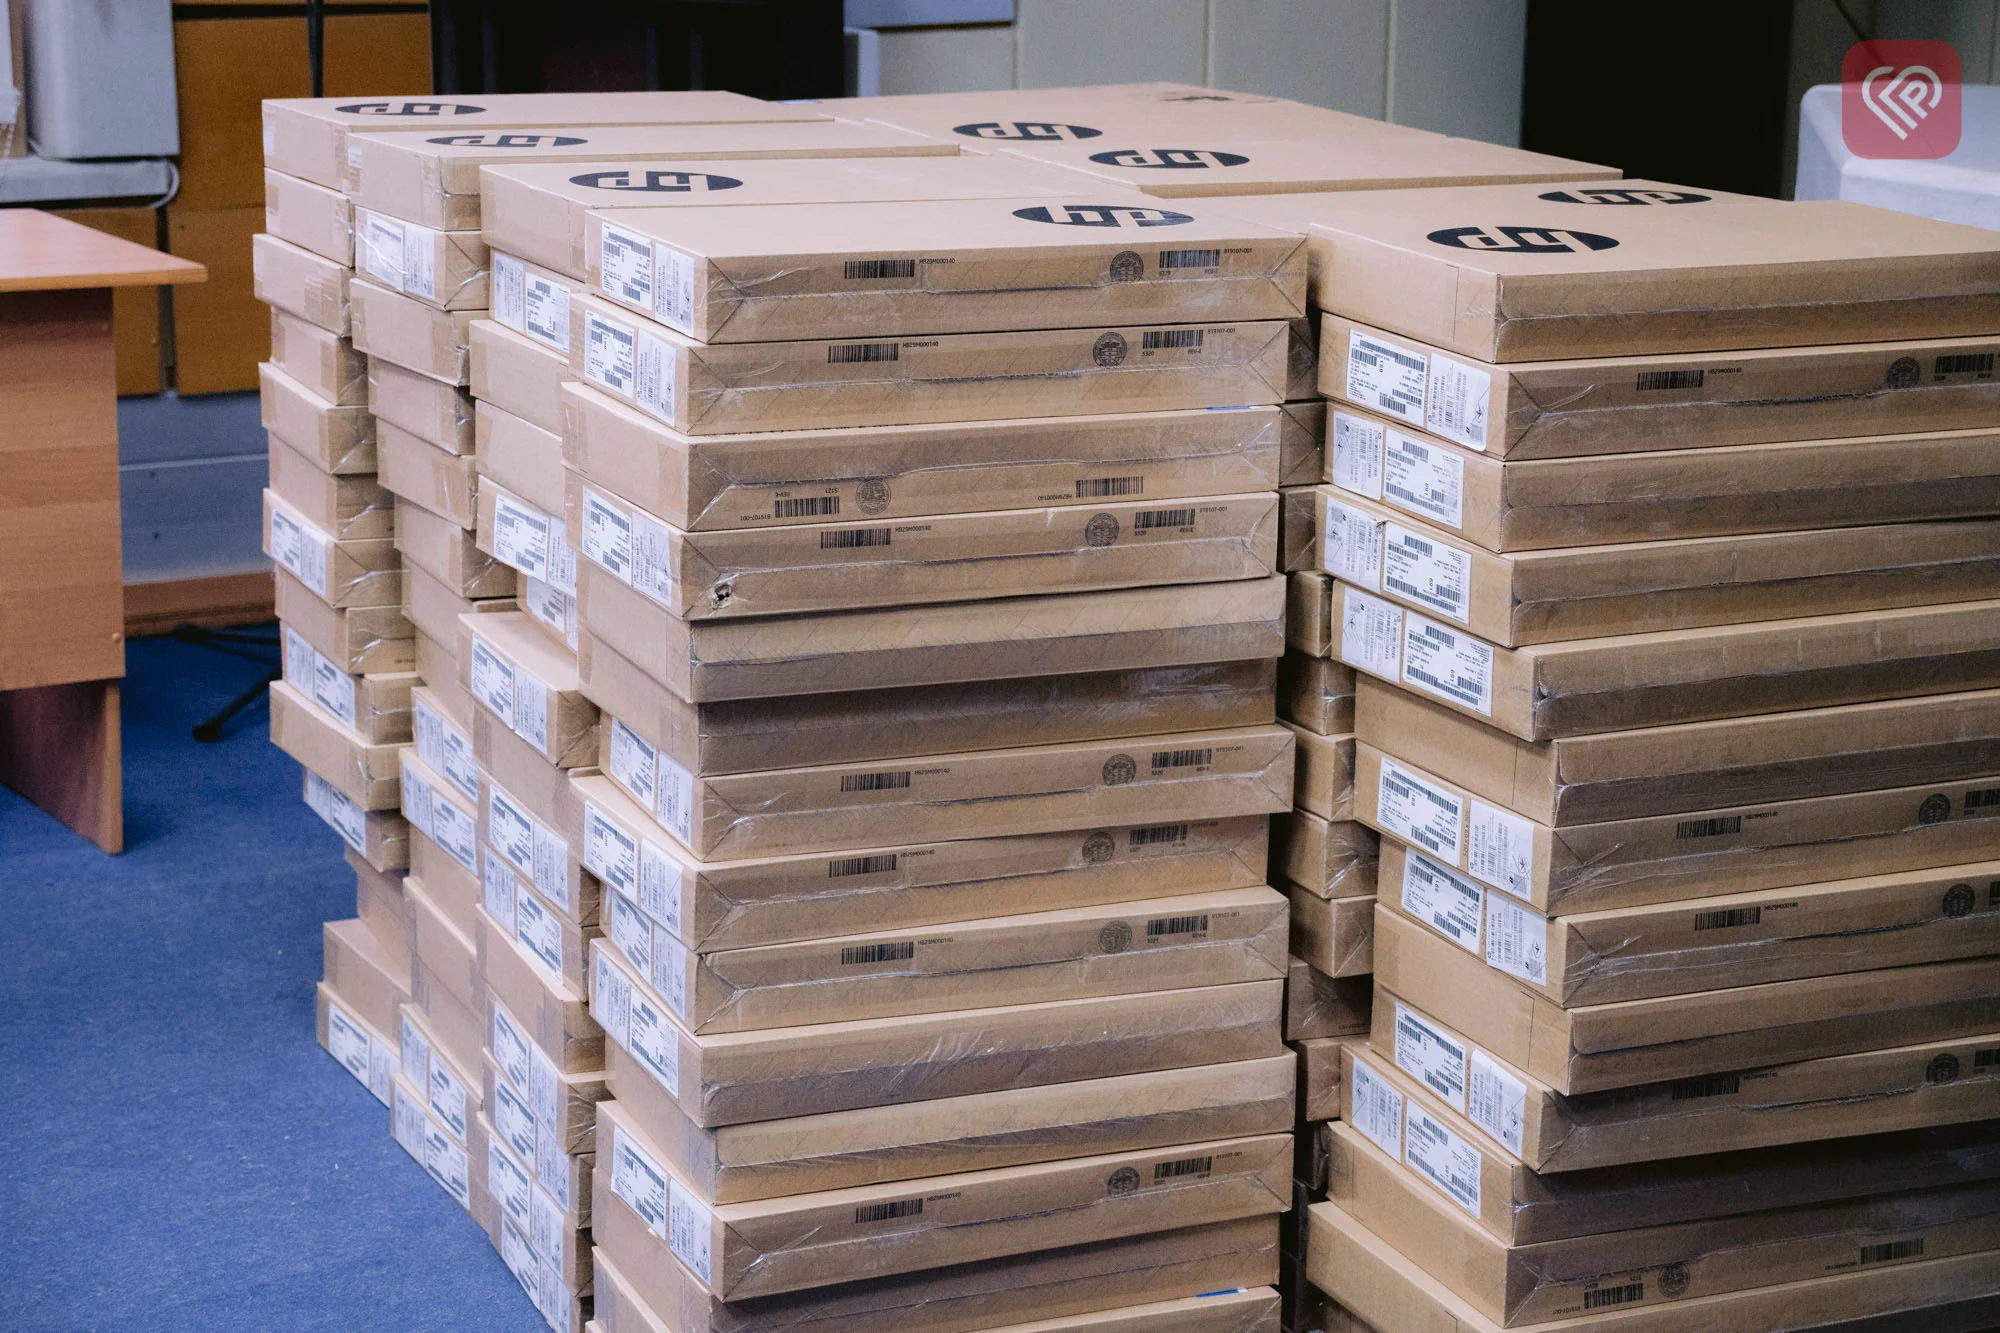 Педагоги Переяславської громади отримали 135 ноутбуків для проведення дистанційних навчань